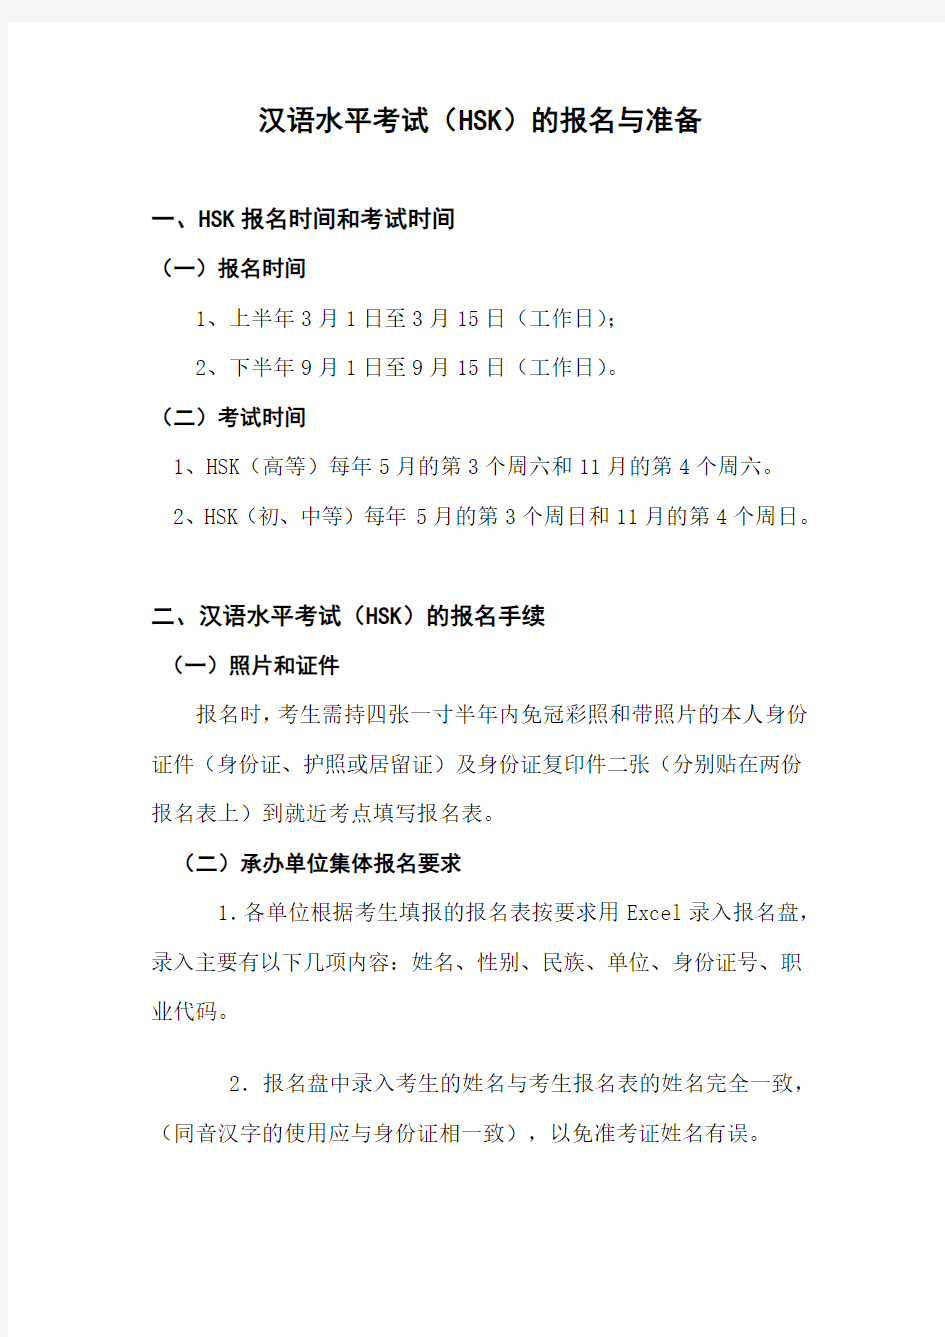 汉语水平考试(HSK)的报名与准备